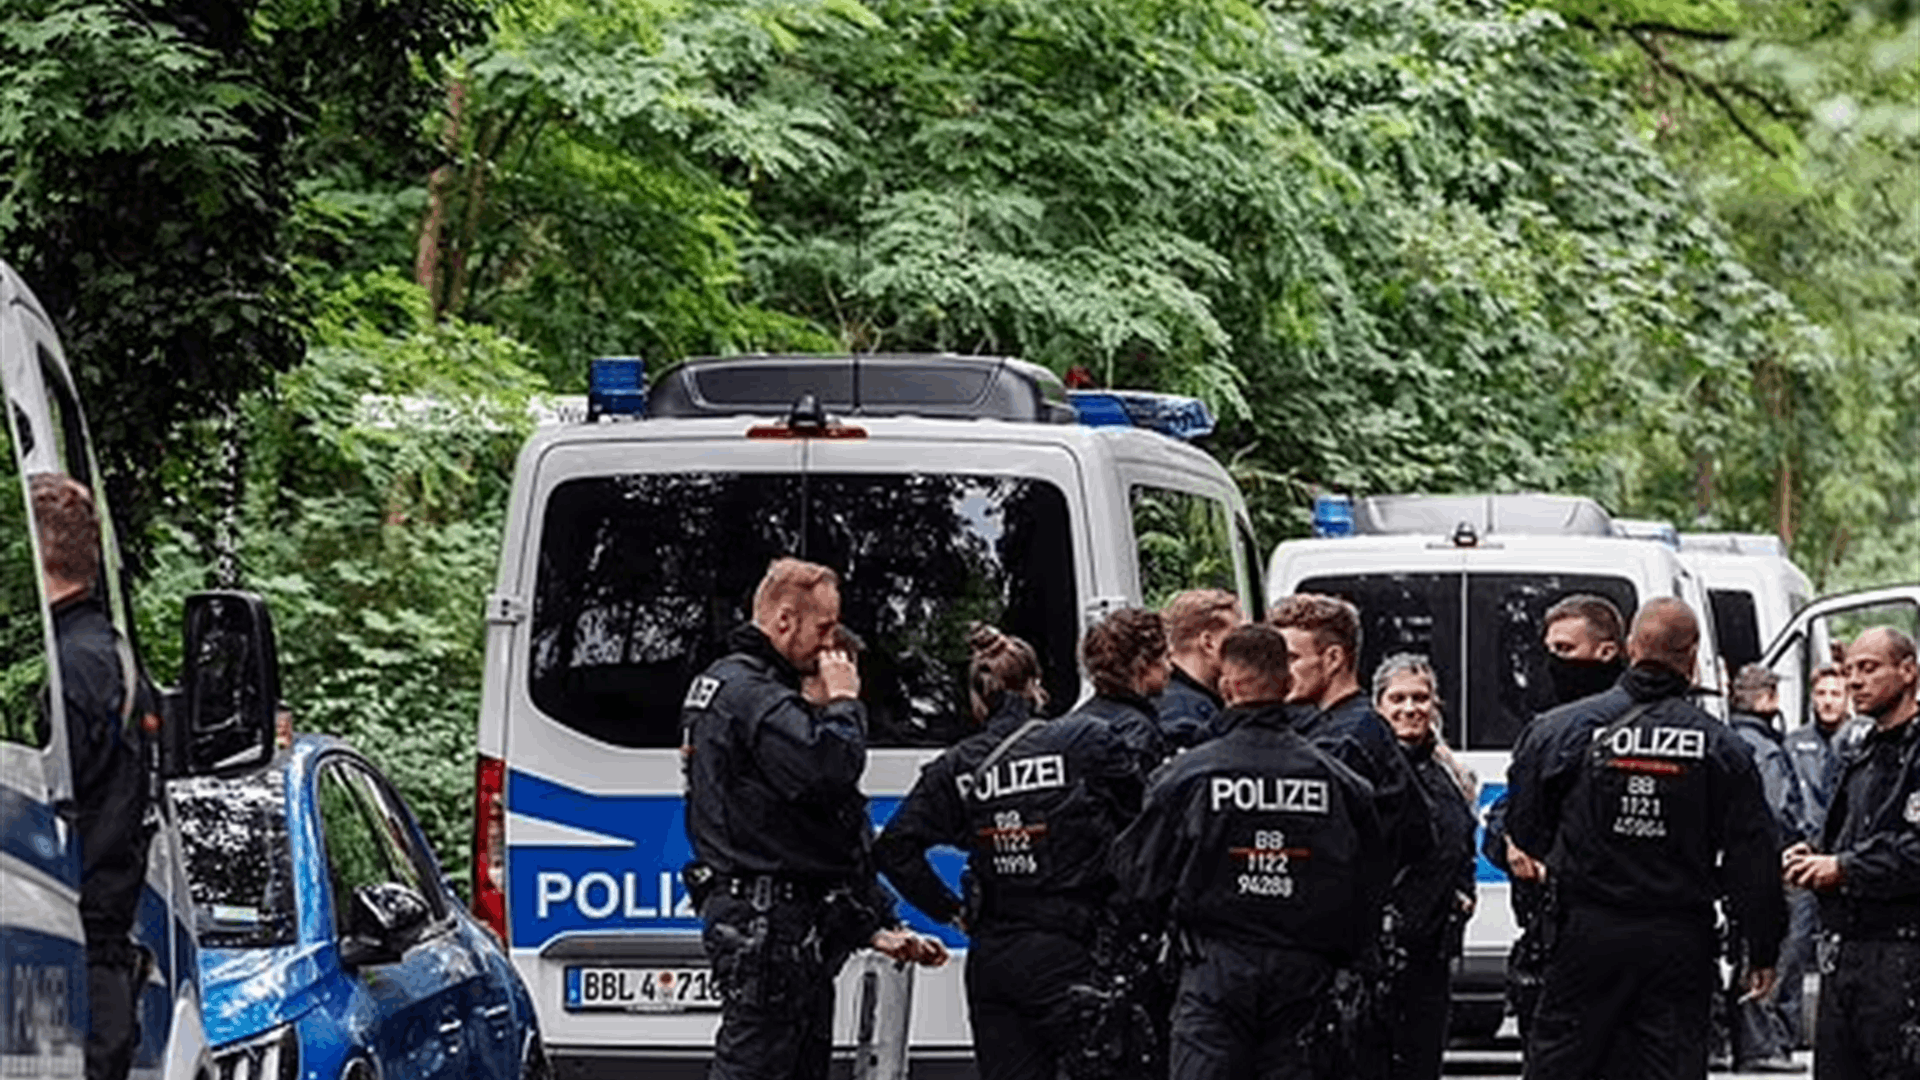 بعد حالة الذعر في برلين من &quot;اللبؤة&quot; الطليقة... الشرطة توقف البحث بخجل: الحيوان الطليق ليس لبؤة؟!